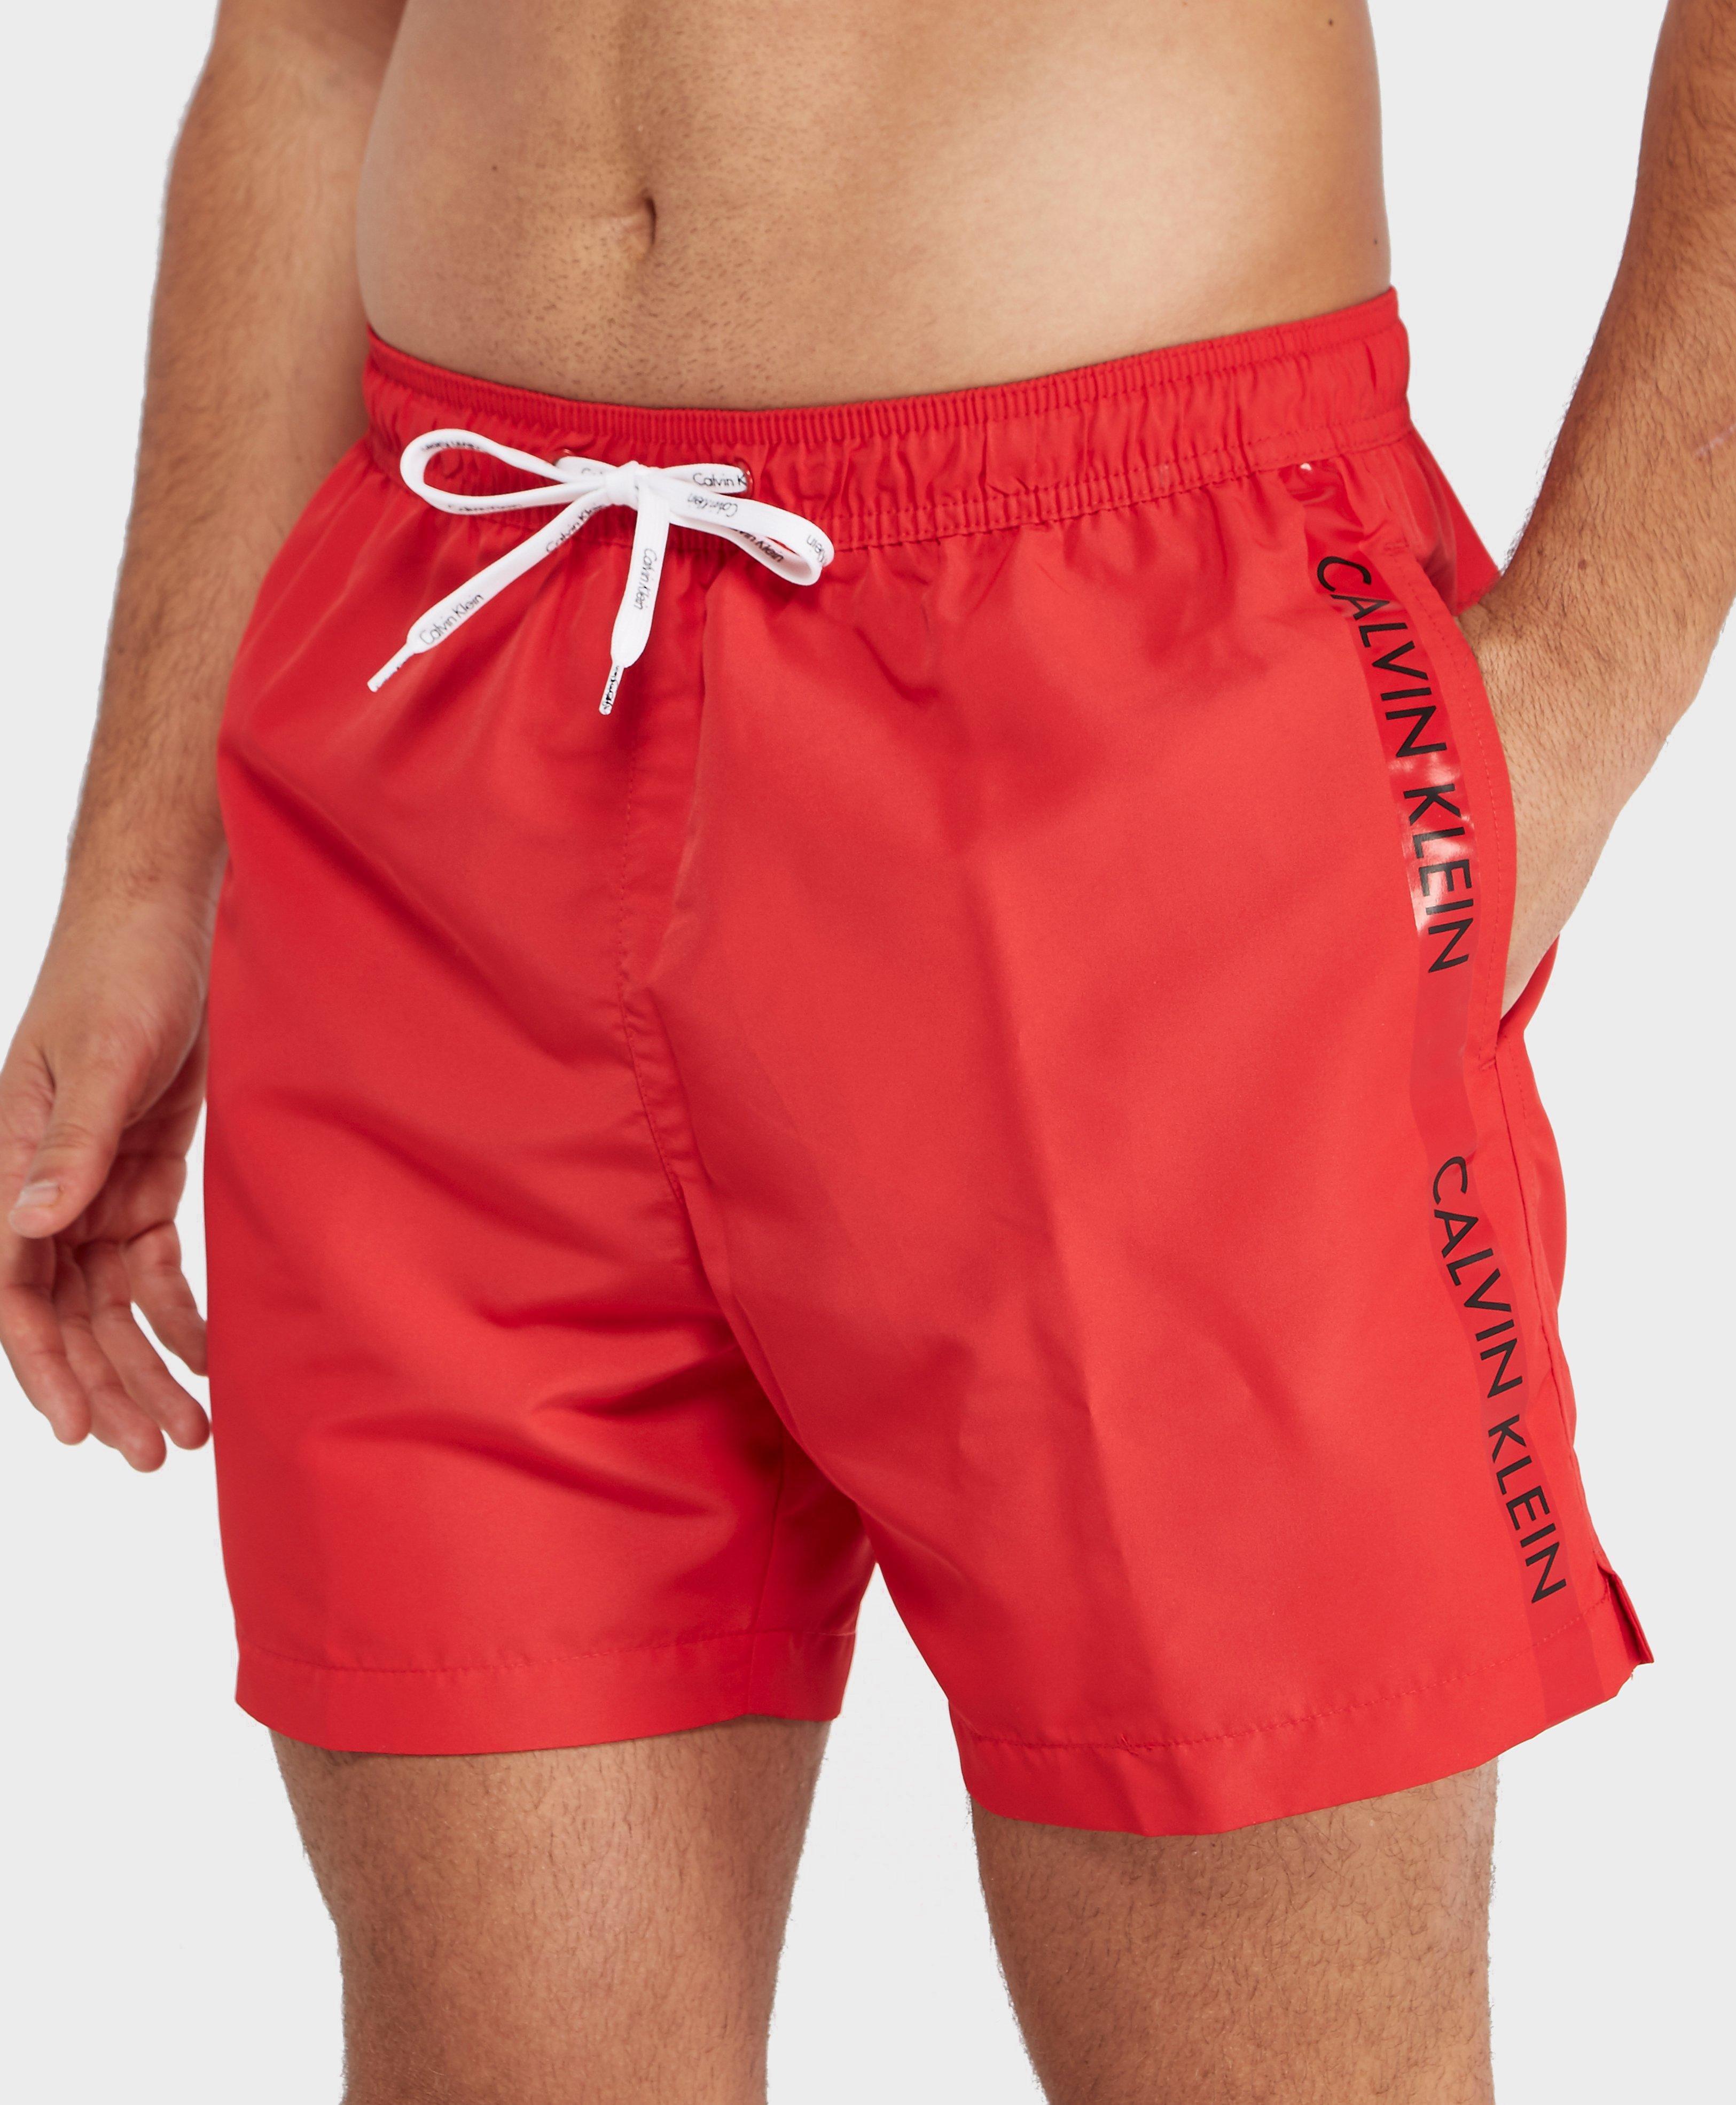 Lyst - Calvin Klein Swim Shorts in Red for Men